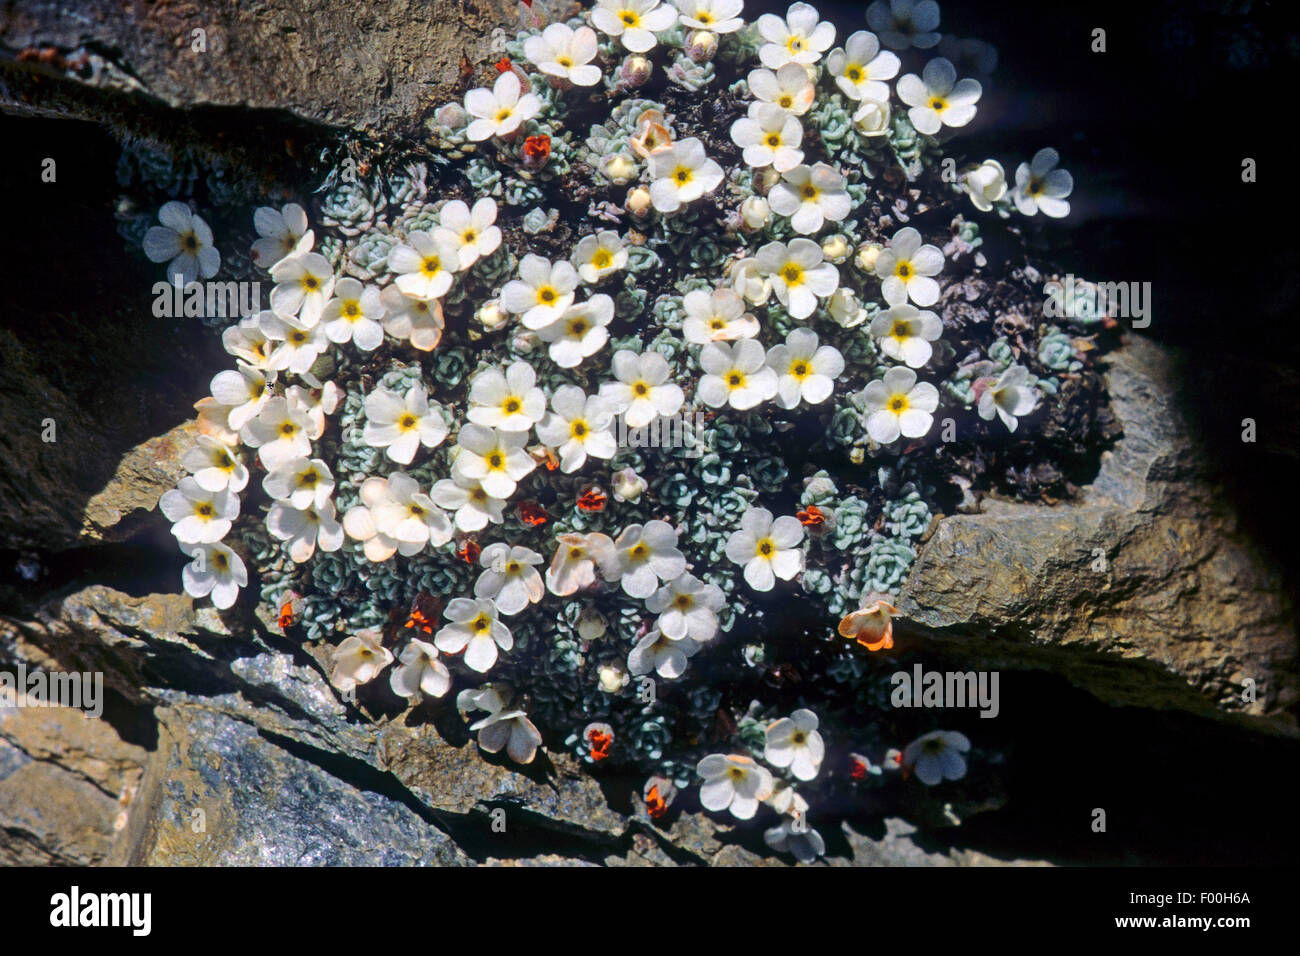 Swiss Rock Jasmine (Androsace helvetica), blooming, Schweig Stock Photo